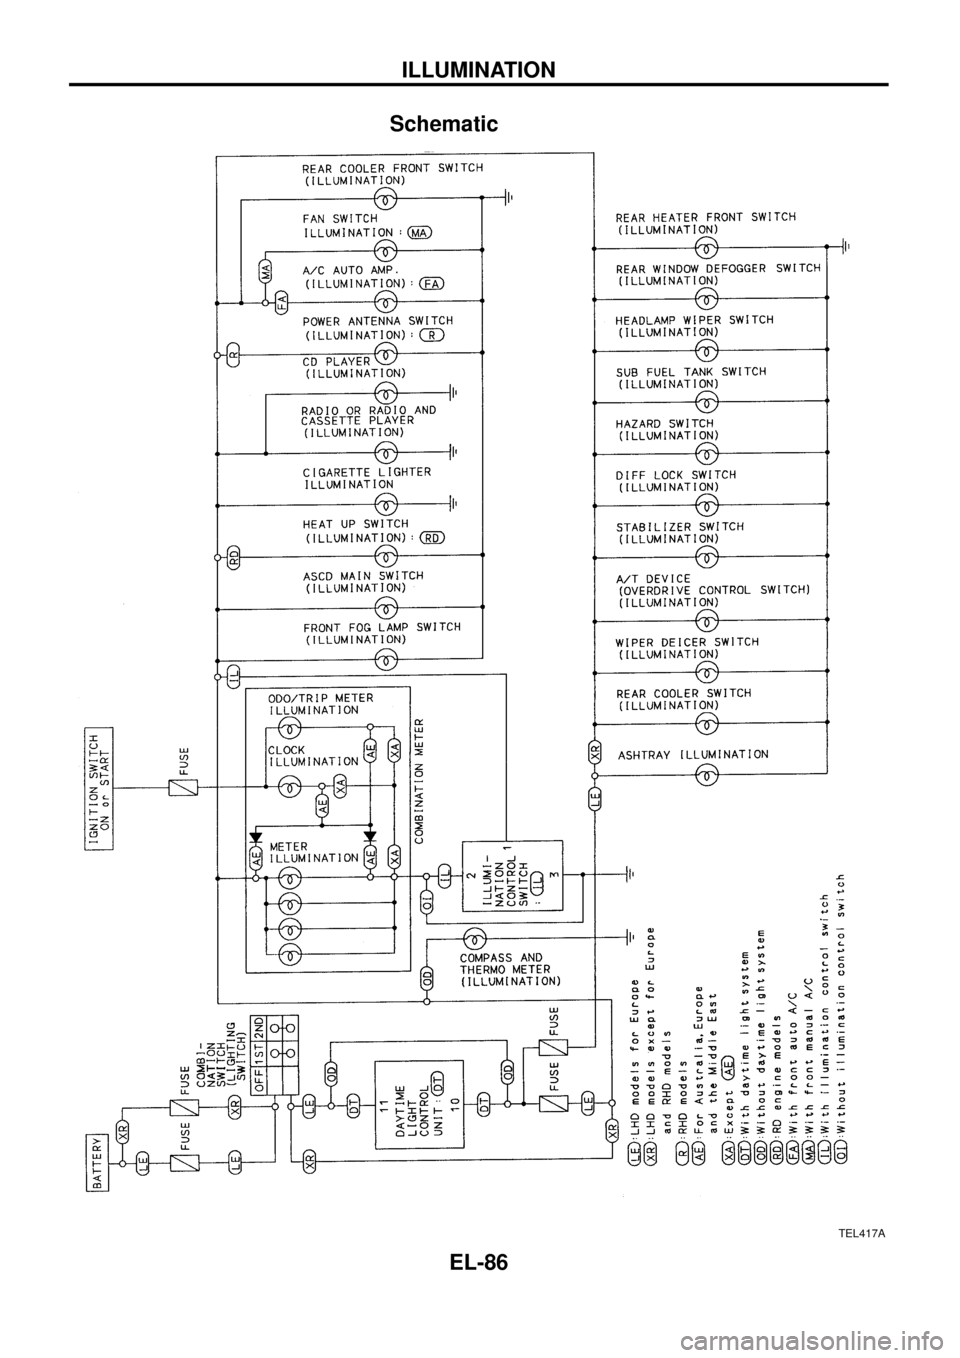 NISSAN PATROL 1998 Y61 / 5.G Electrical System Manual Online Schematic
TEL417A
ILLUMINATION
EL-86 